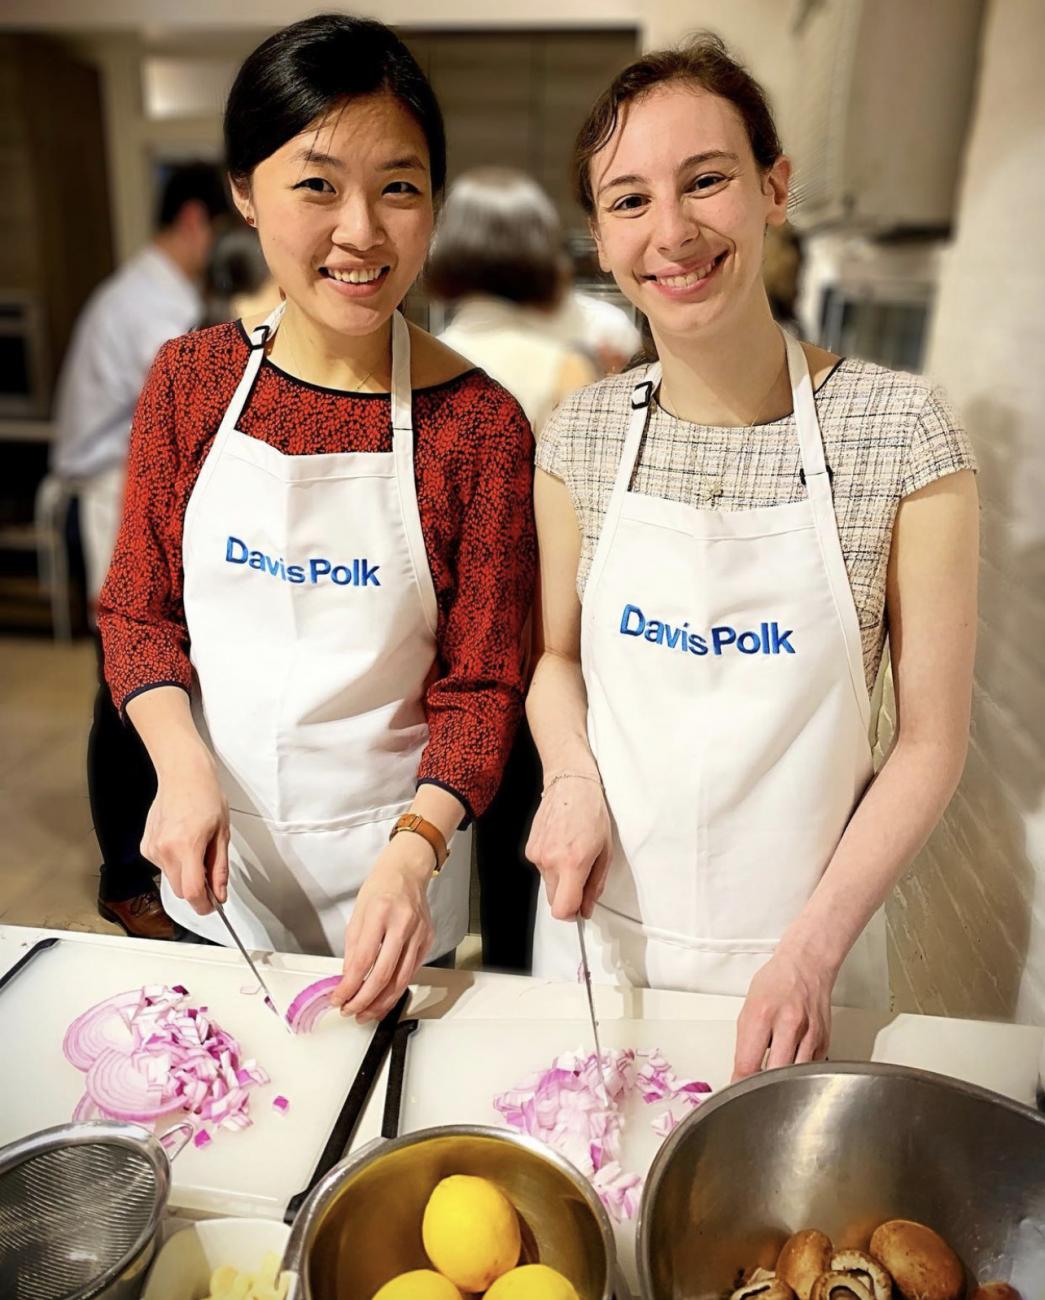 Two Davis Polk summer associates wearing aprons at a cooking class